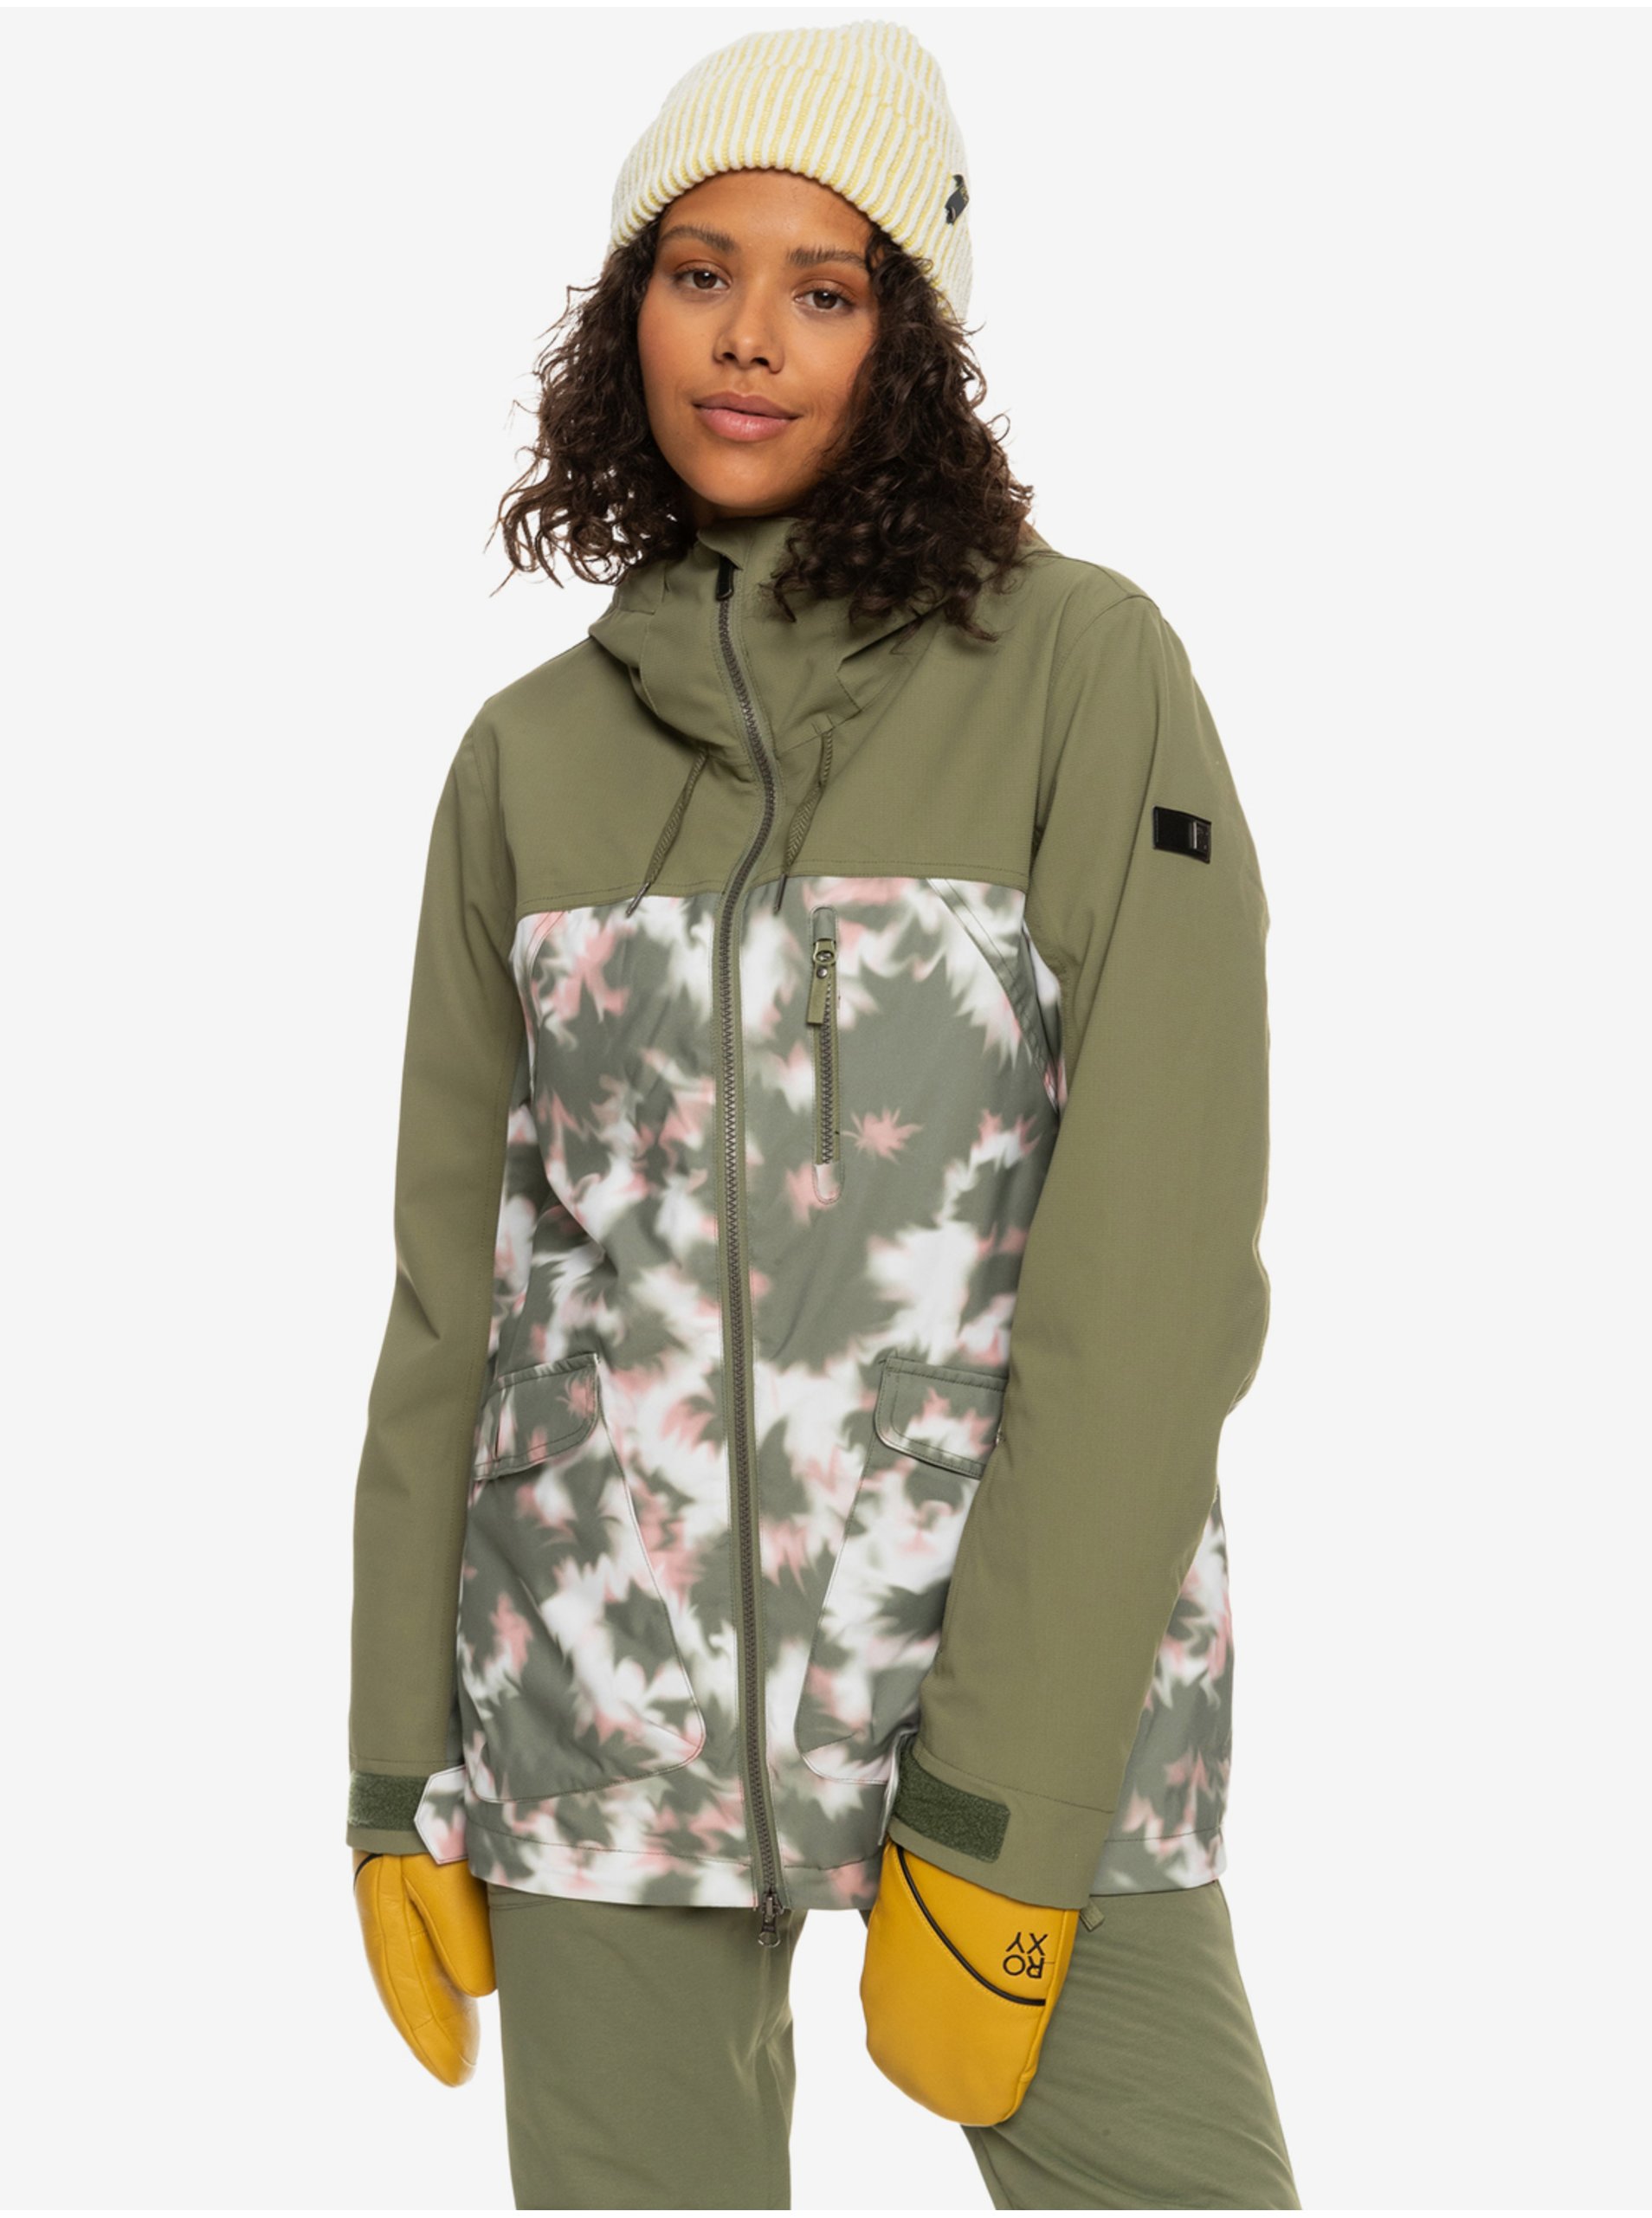 E-shop Khaki dámská zimní vzorovaná bunda Roxy Stated